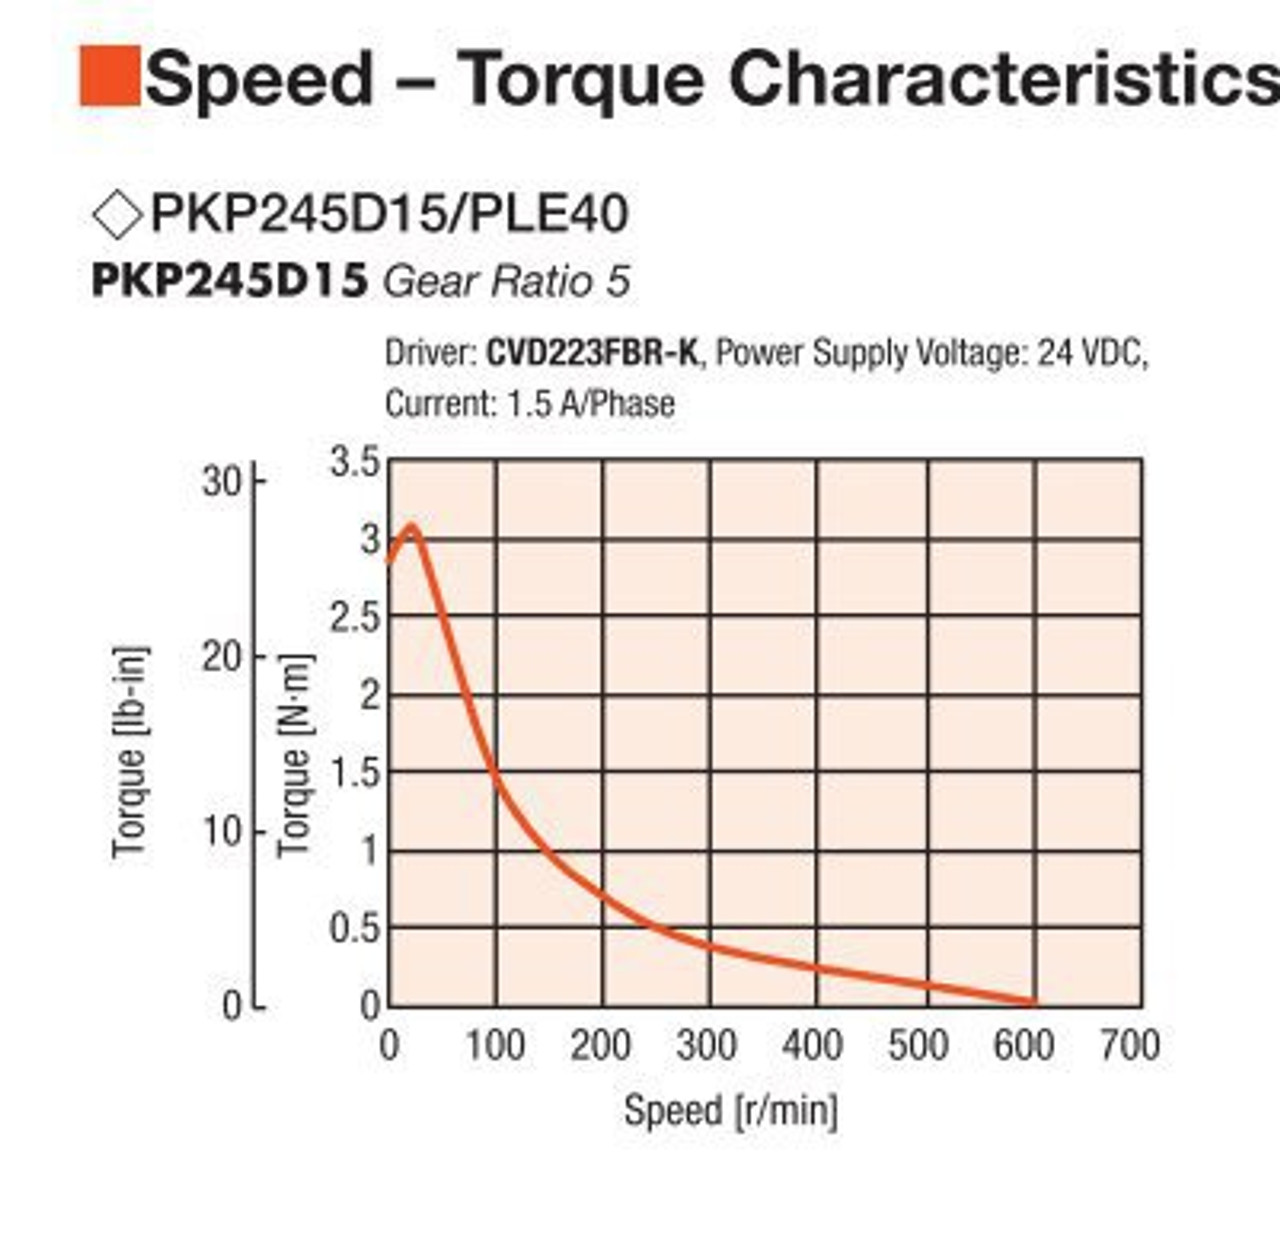 PKP245D15A2-R2E / PLE40-5B / P00027 - Speed-Torque